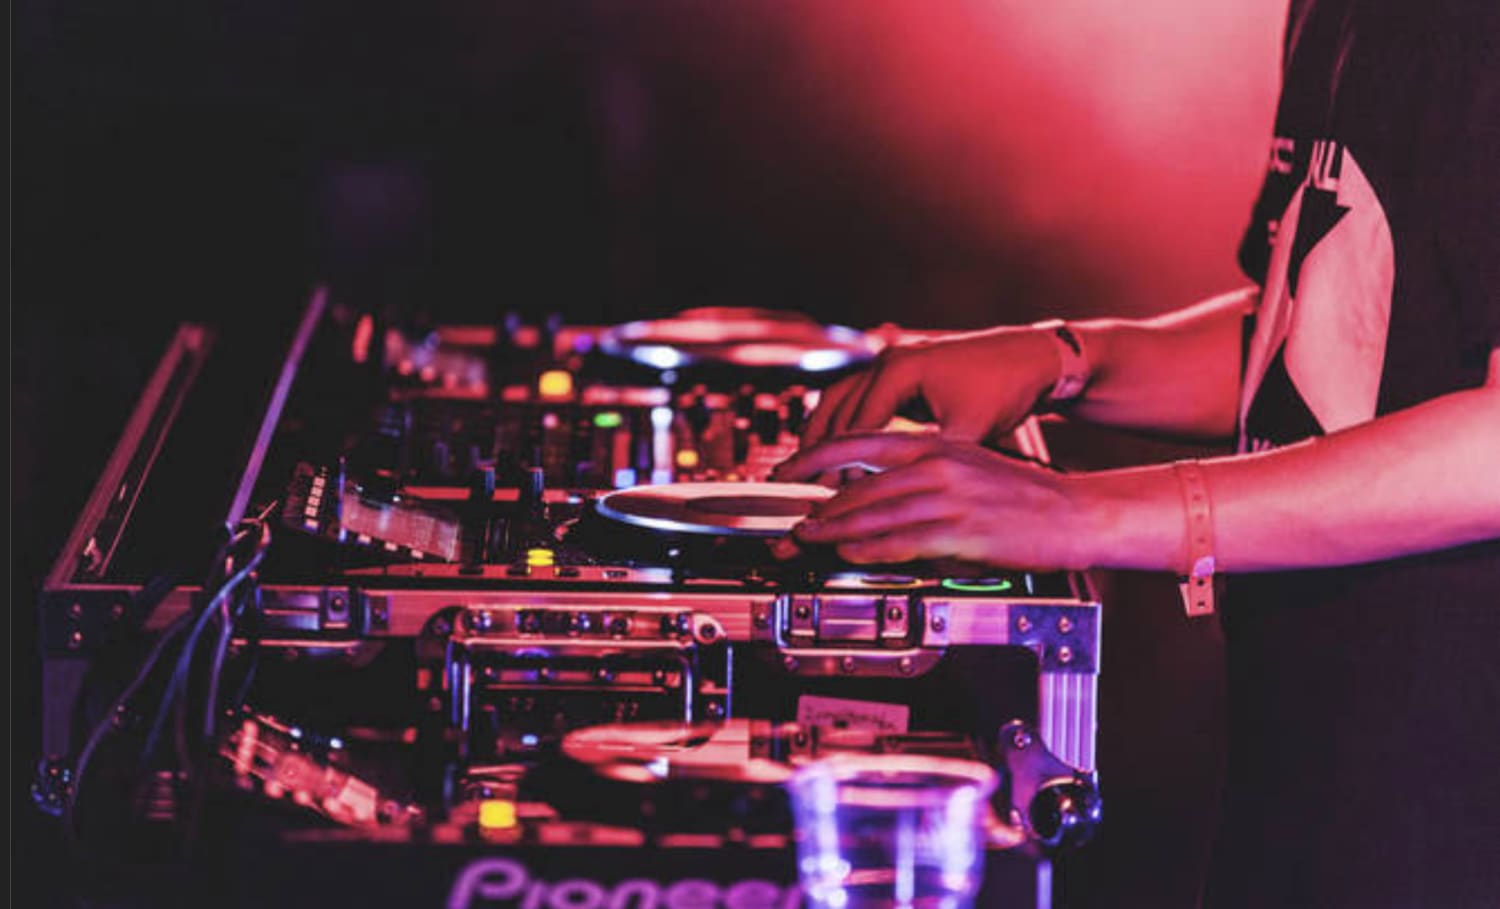 Schaar Plantage Digitaal Best DJ mixes 2017: 15 amazing sets to get lost within